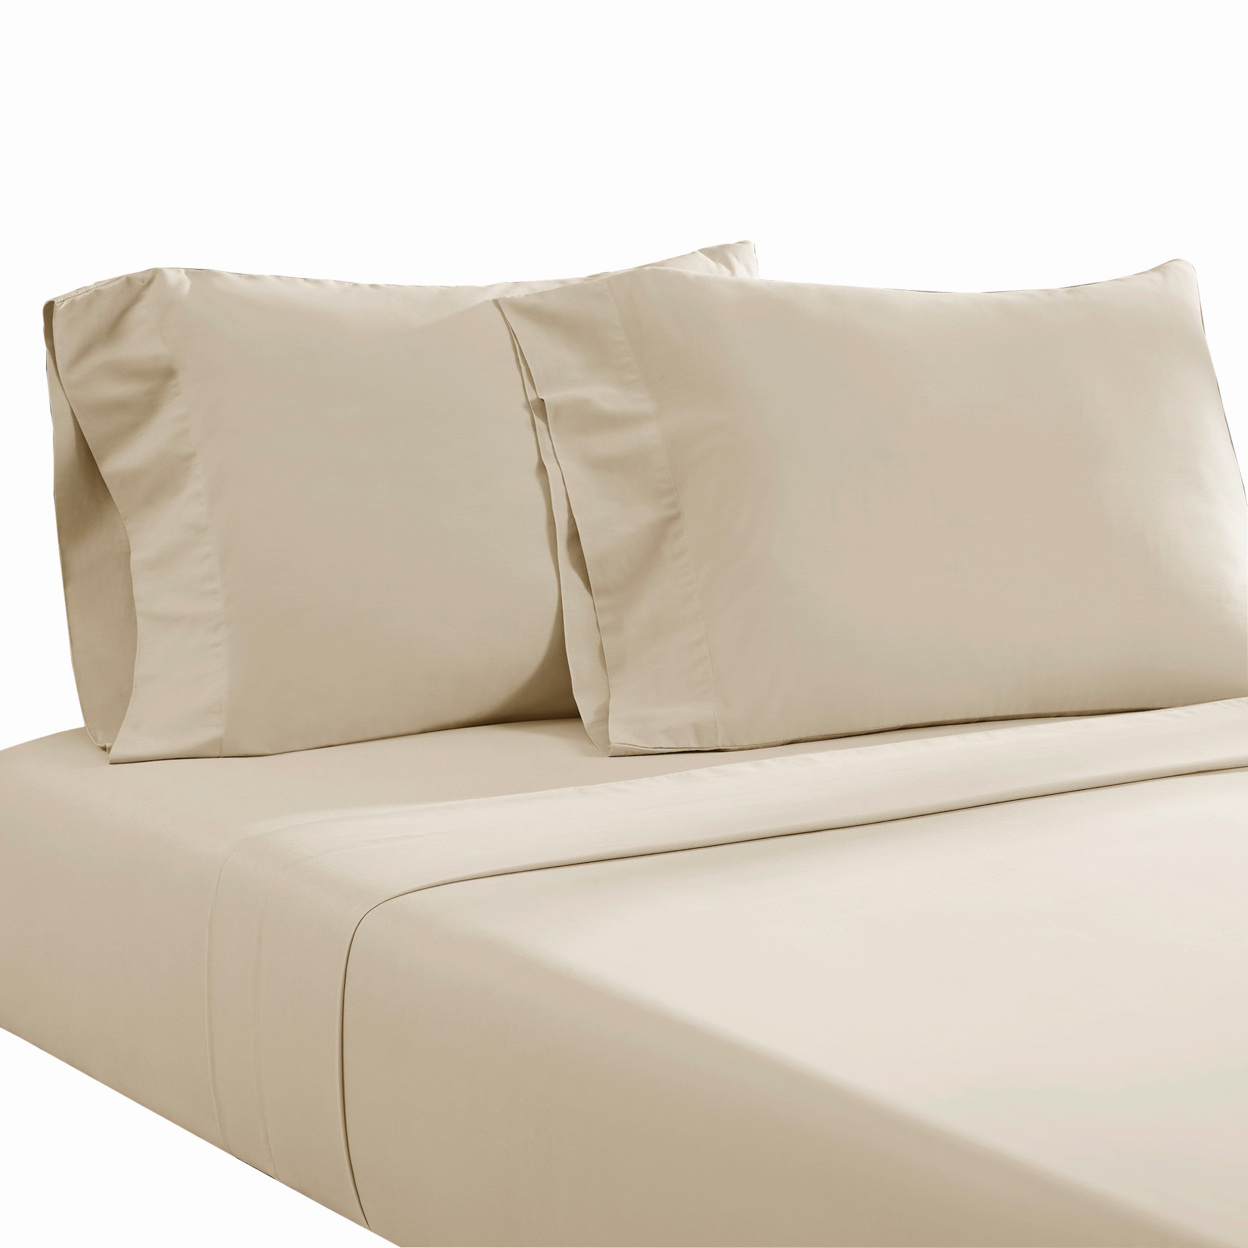 Ivy 4 Piece Queen Size Cotton Ultra Soft Bed Sheet Set, Prewashed, Cream- Saltoro Sherpi